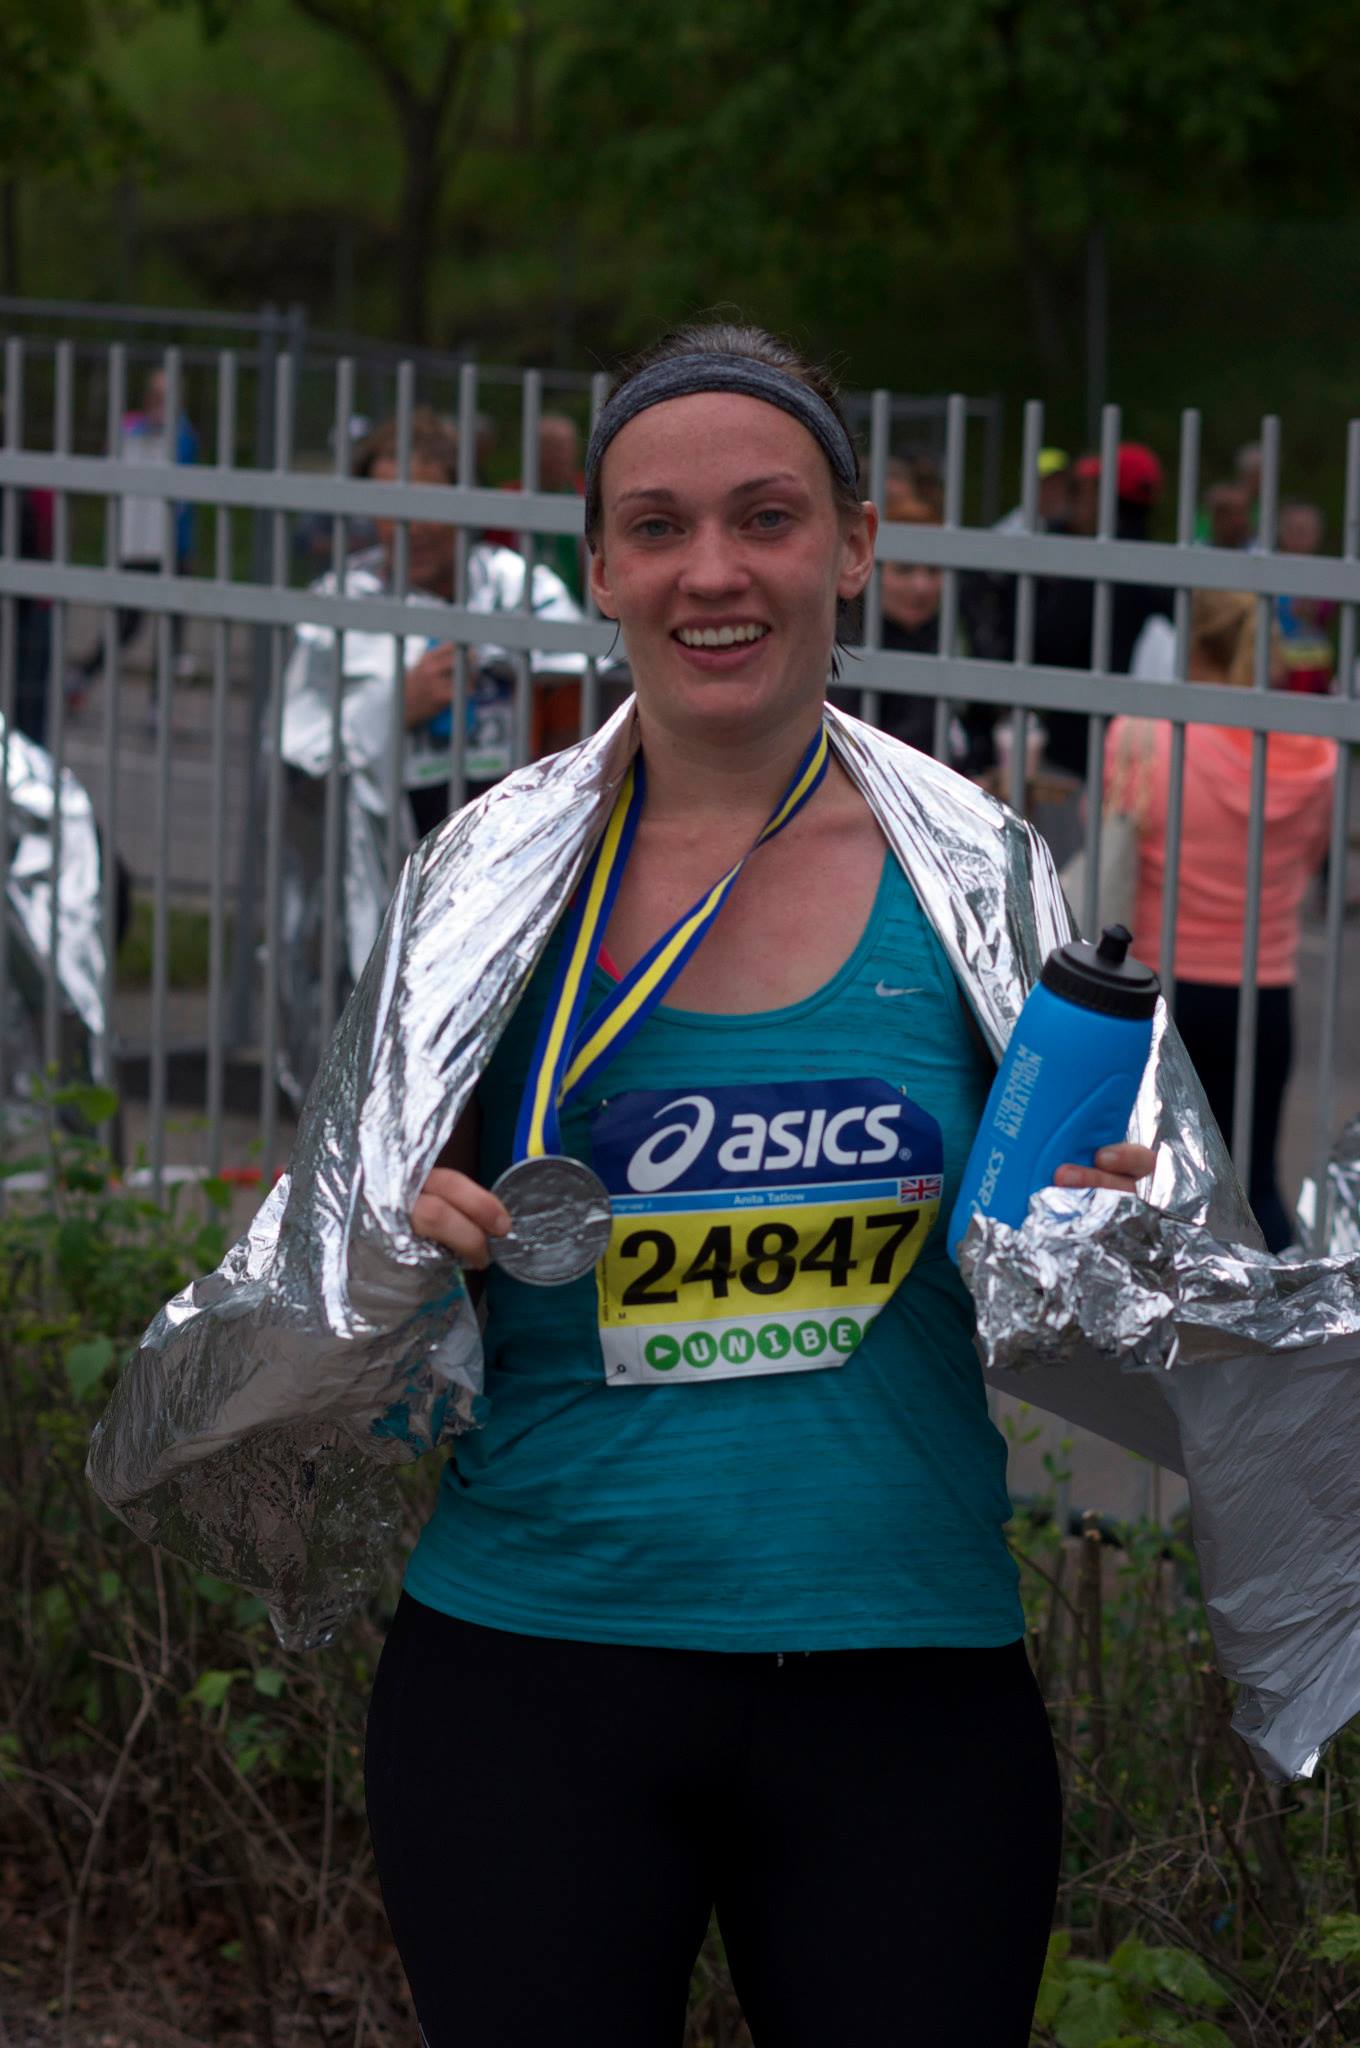 Anita running the marathon 3